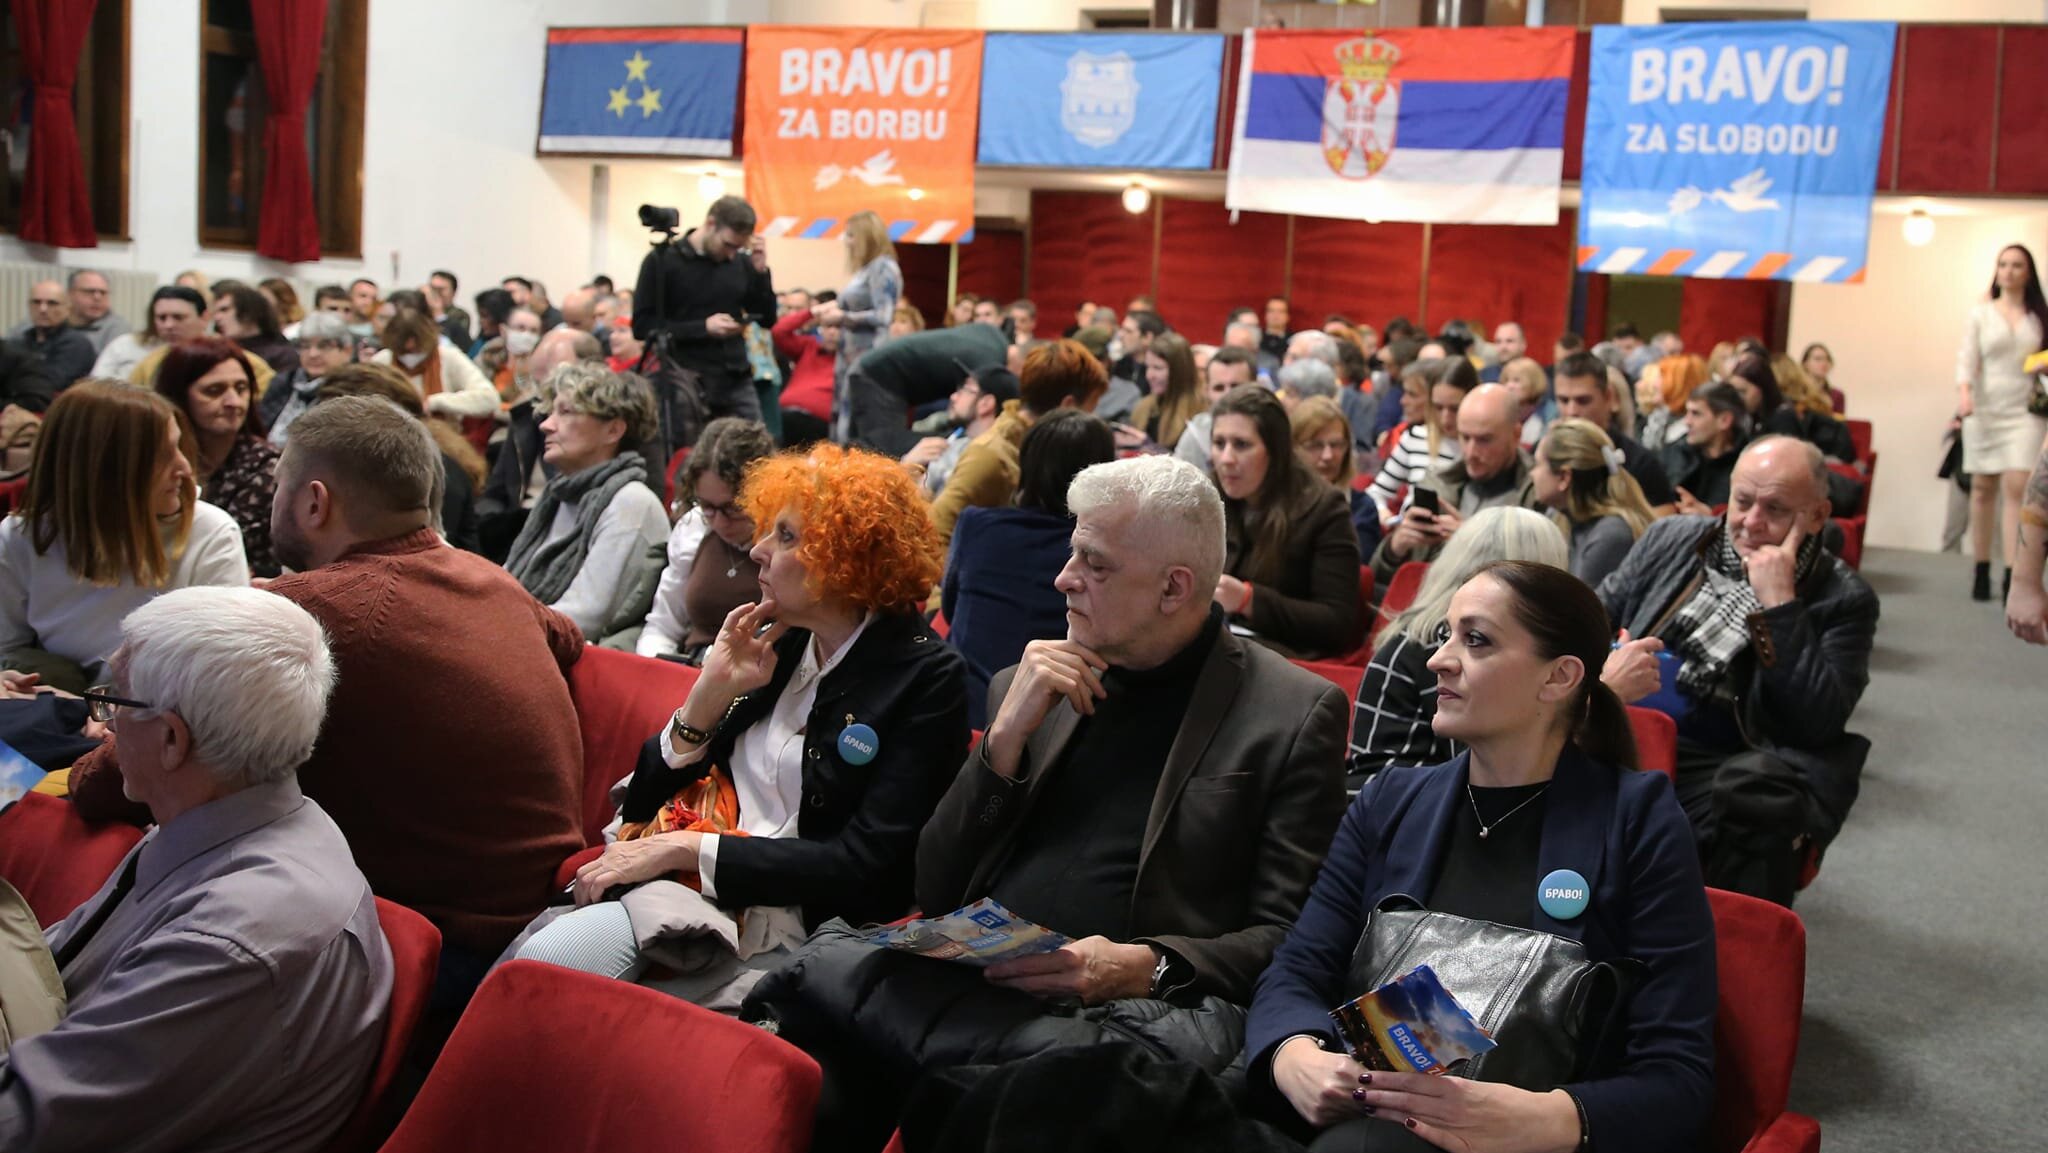 Pokret "Bravo!" iz Novog Sada obeležio godinu dana od osnivanja i najavio izlazak na predstojeće lokalne izbore 2